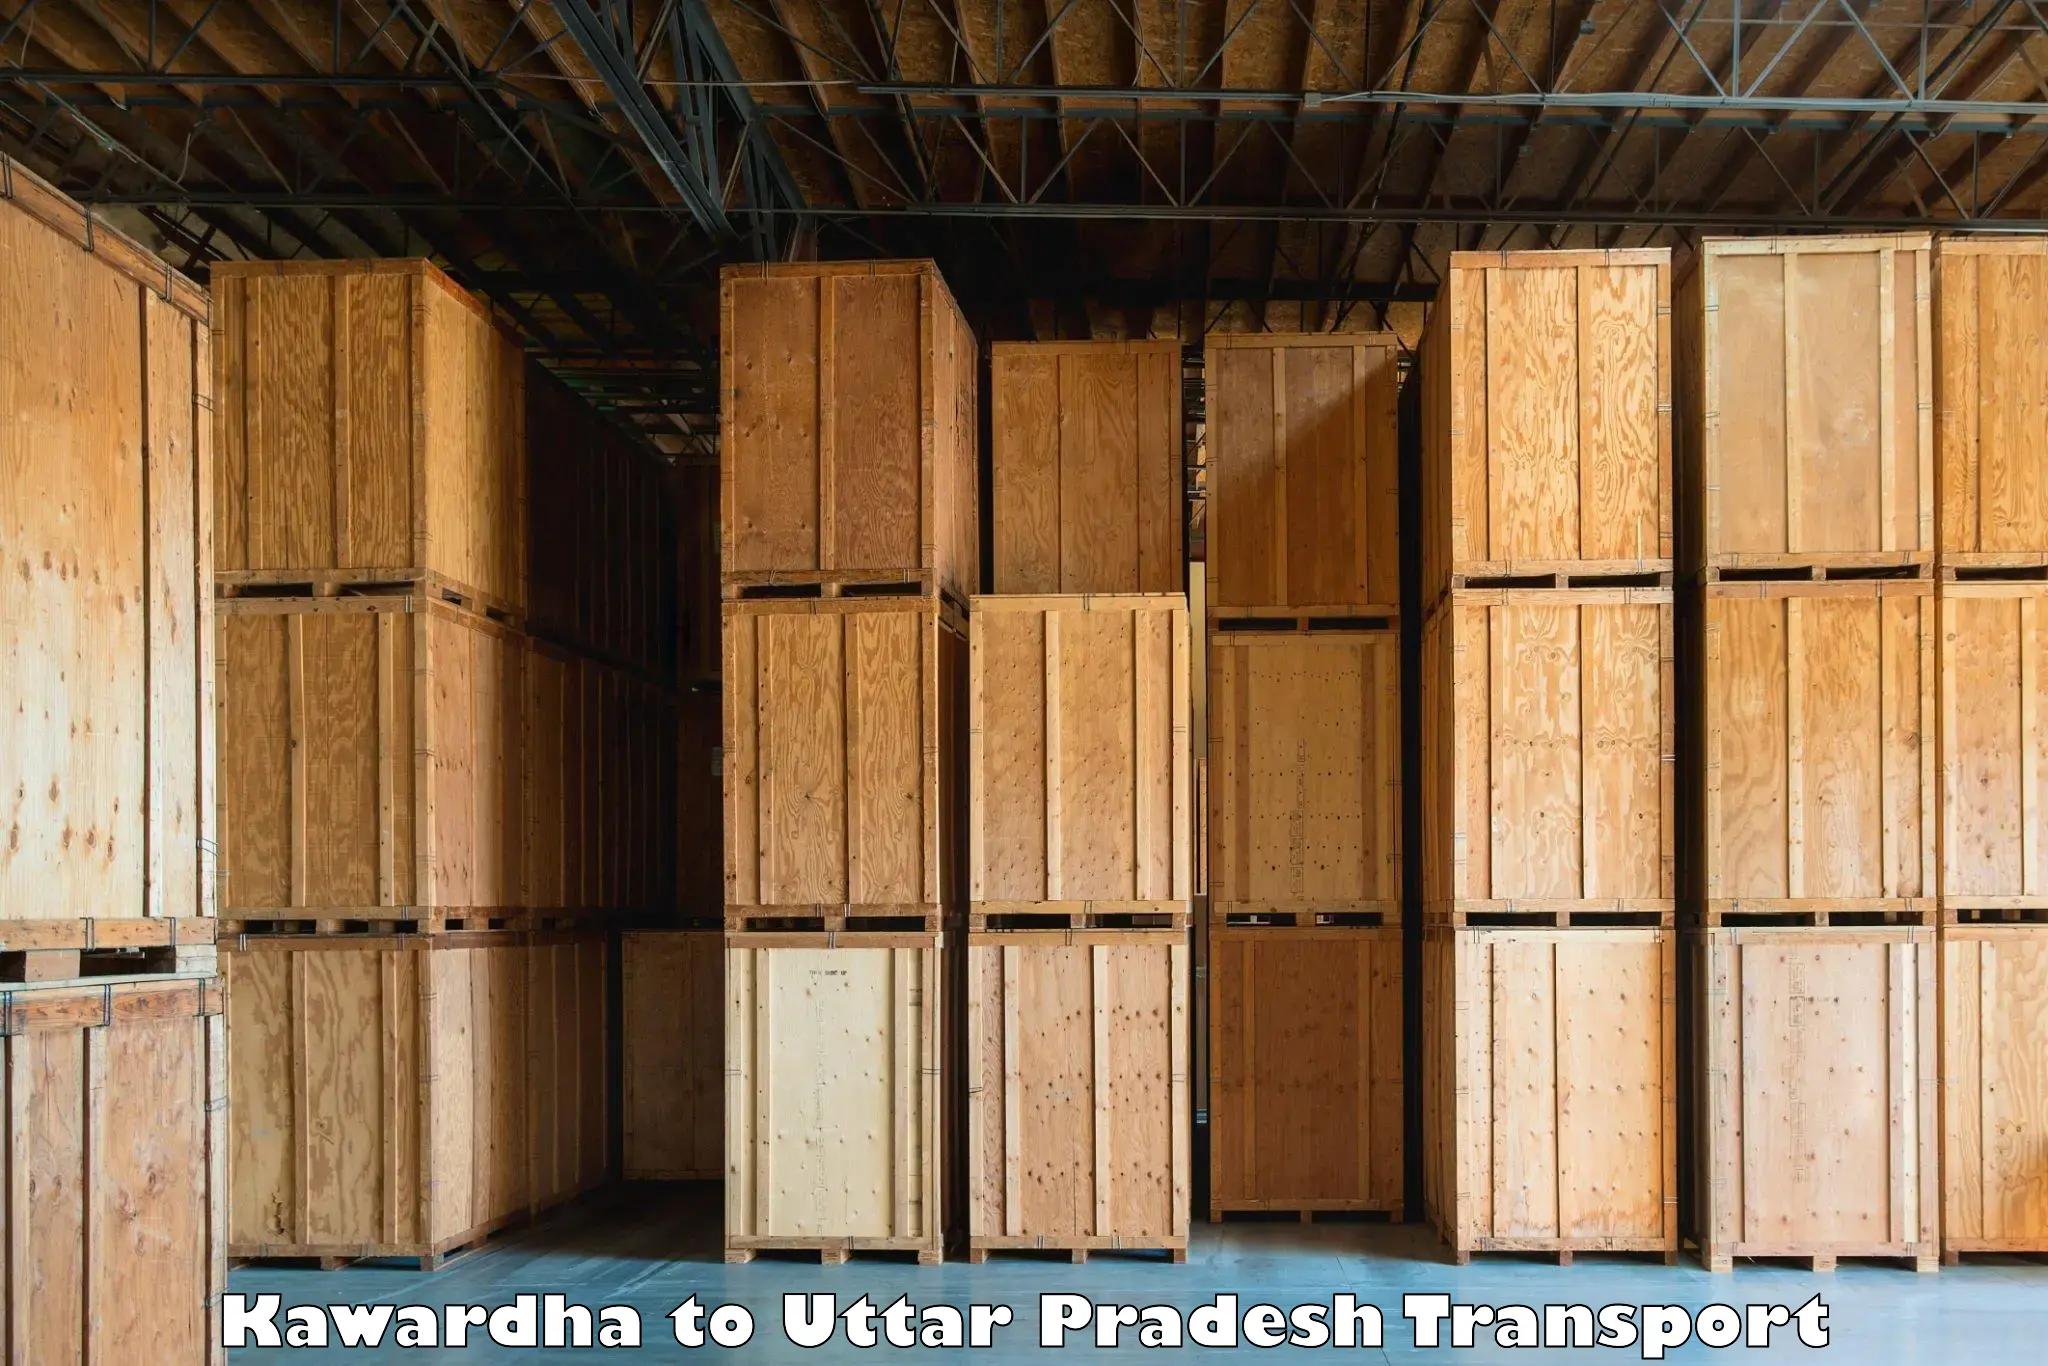 Online transport Kawardha to Dohrighat